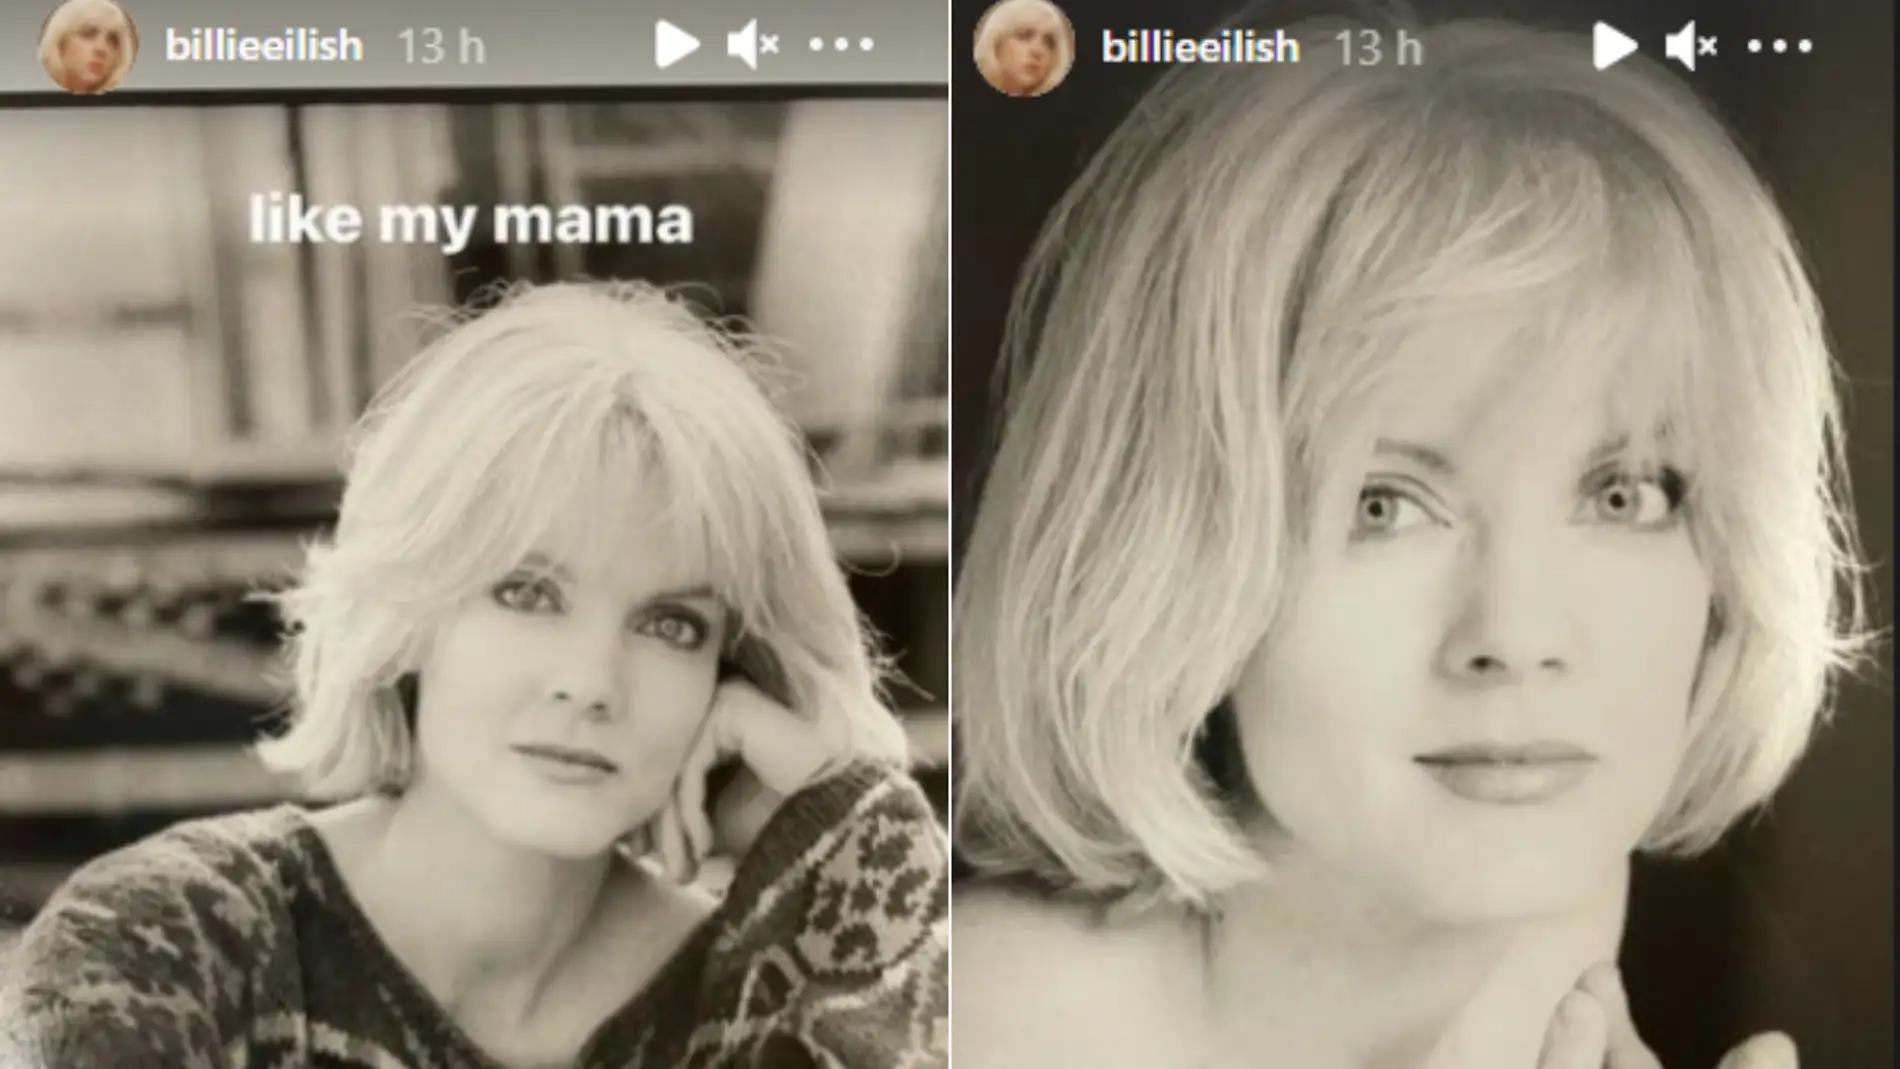 La madre de Billie EIlish de joven title=